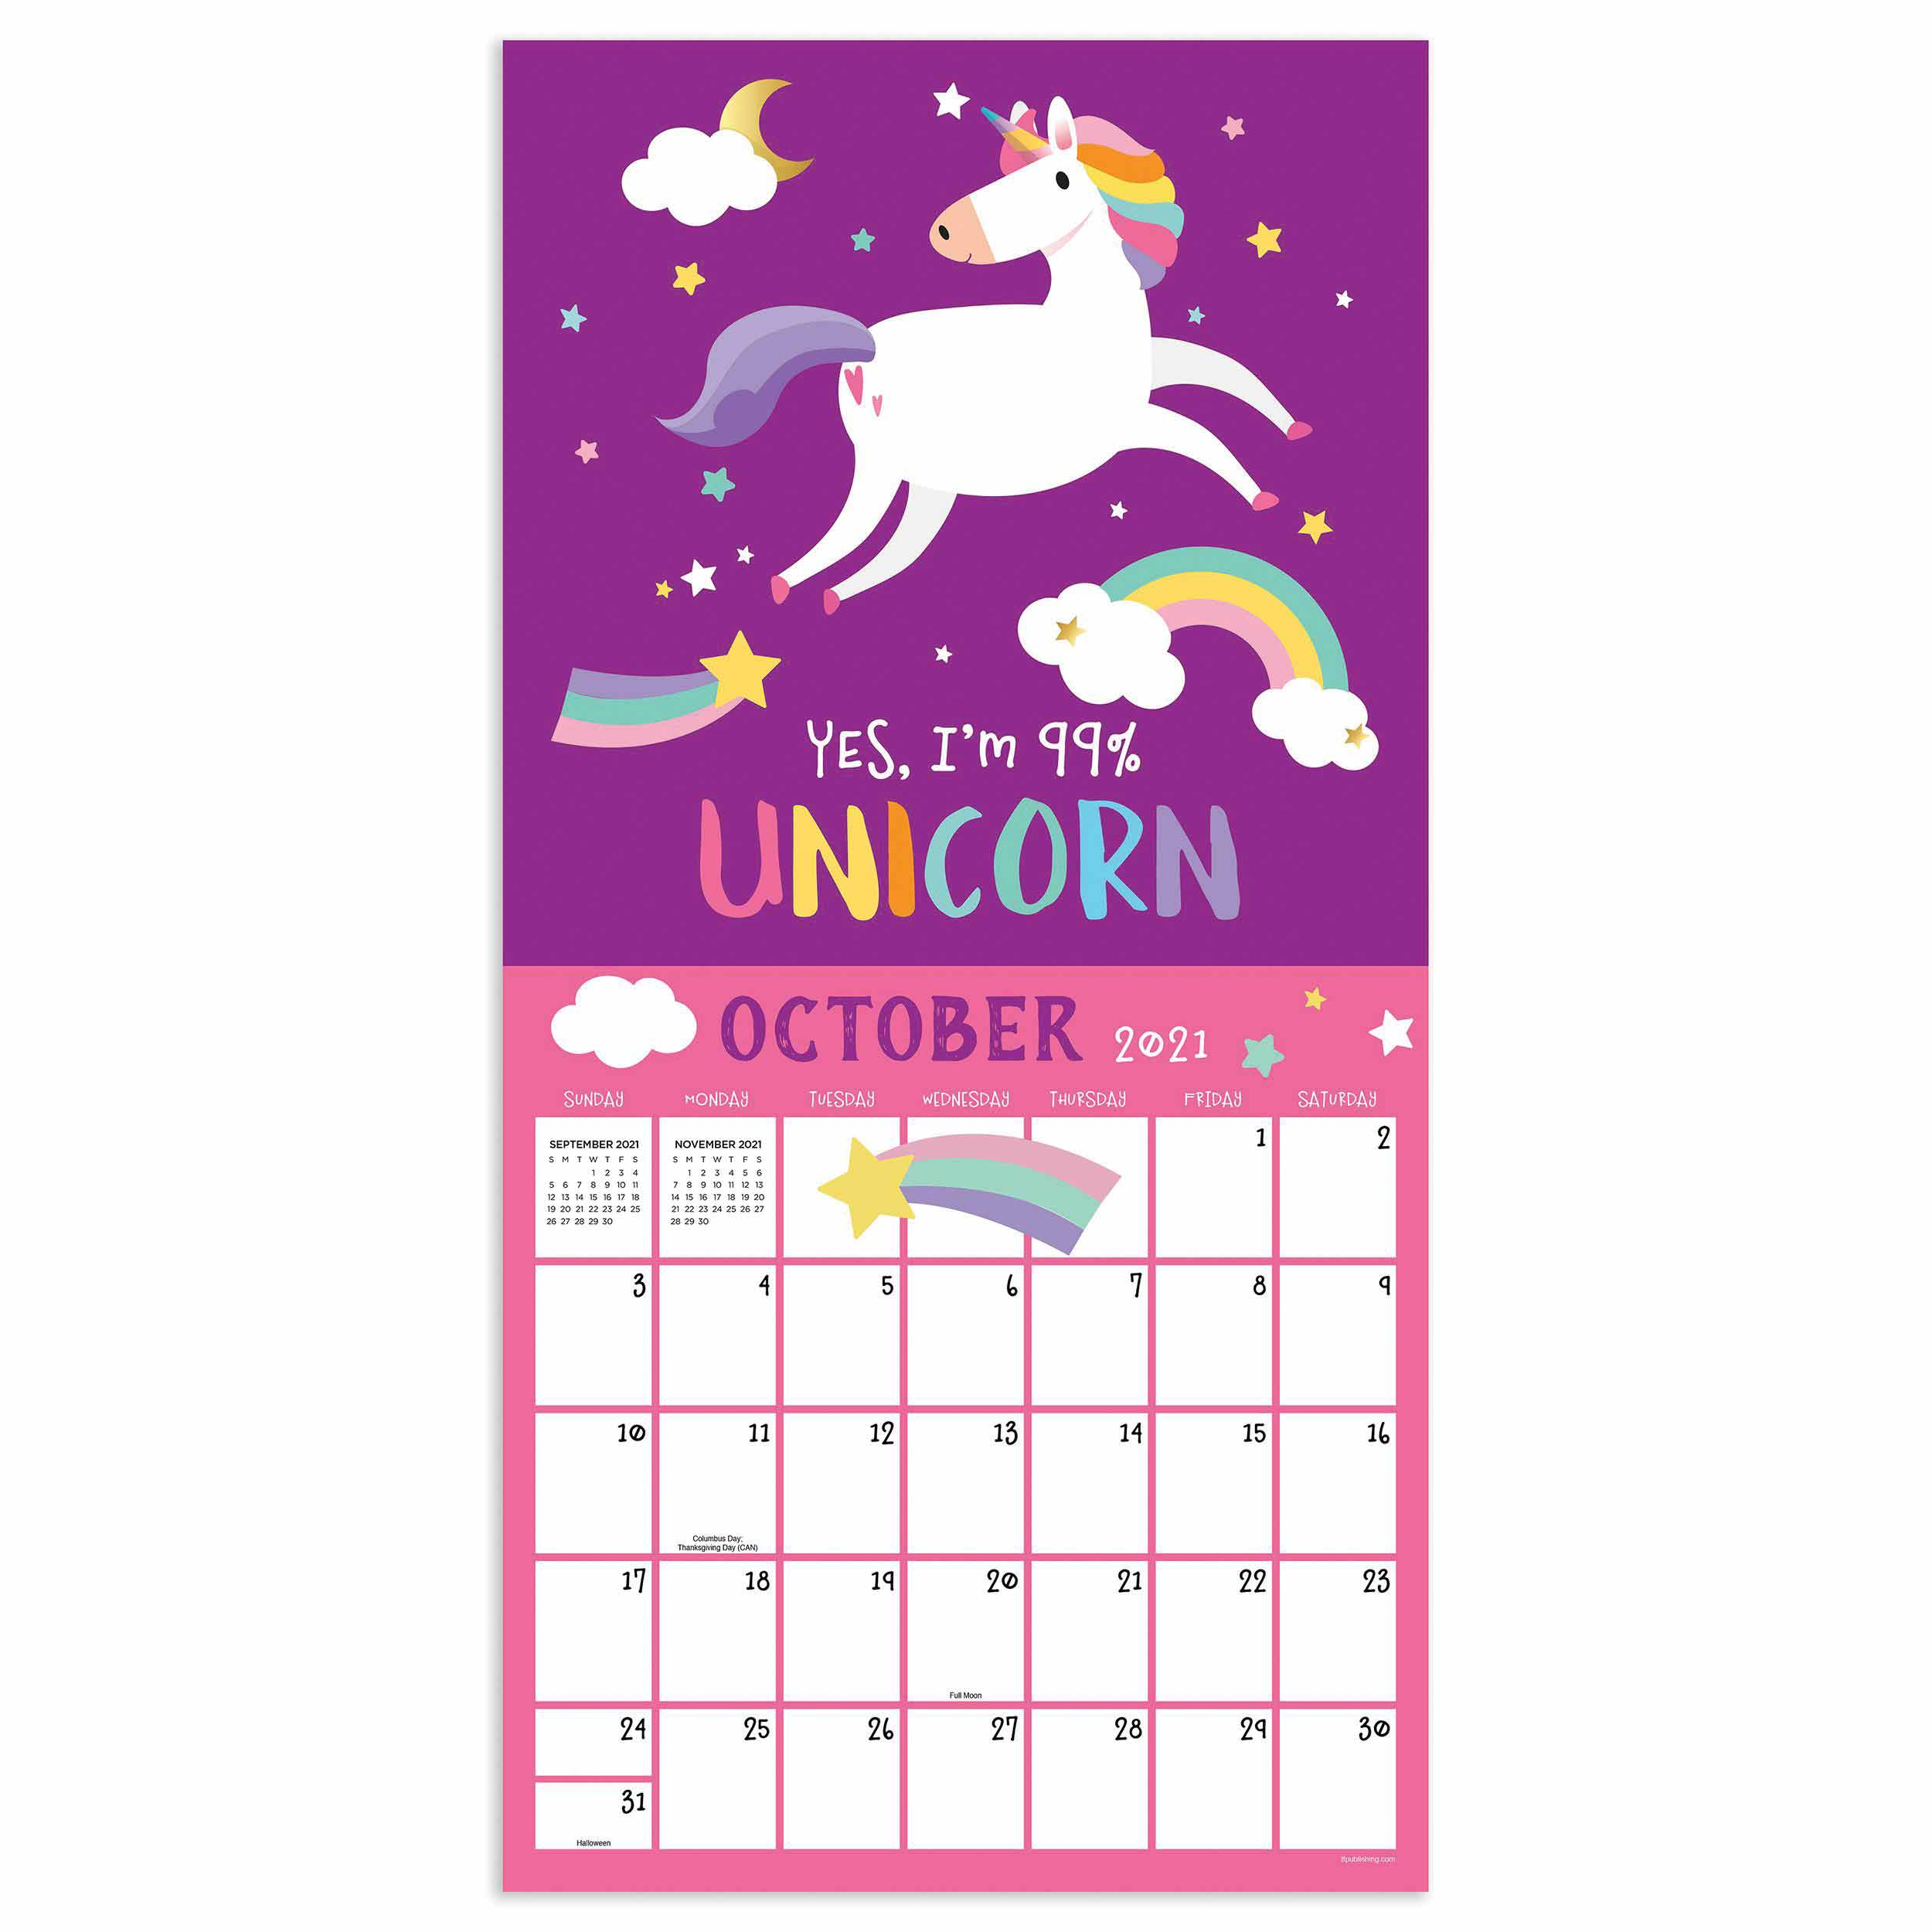 Believe In Unicorns Calendar 2021 At Calendar Club